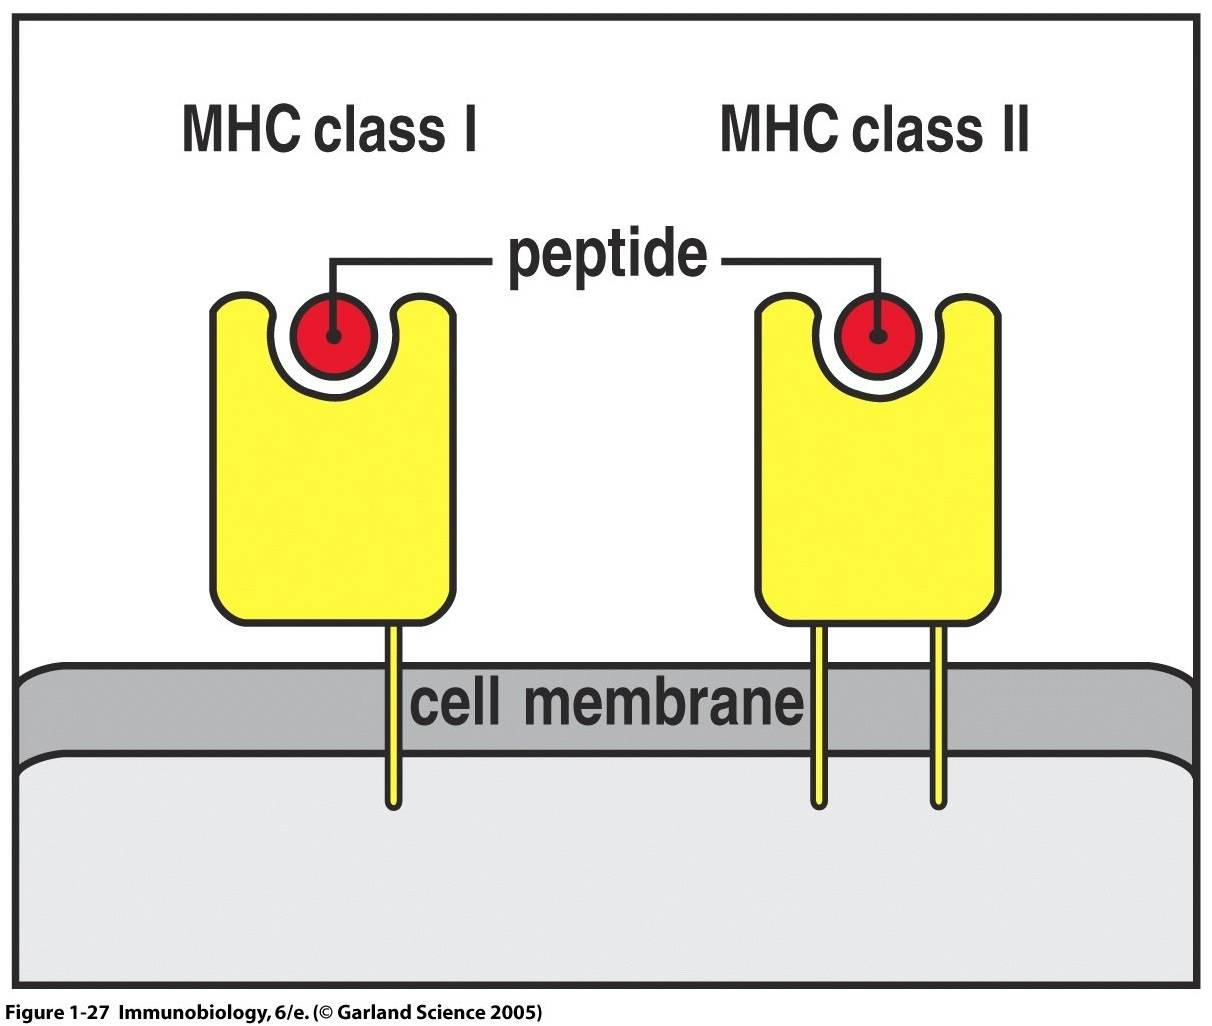 Τα MHC είναι μόρια που εκφράζονται στην επιφάνεια των κυττάρων του